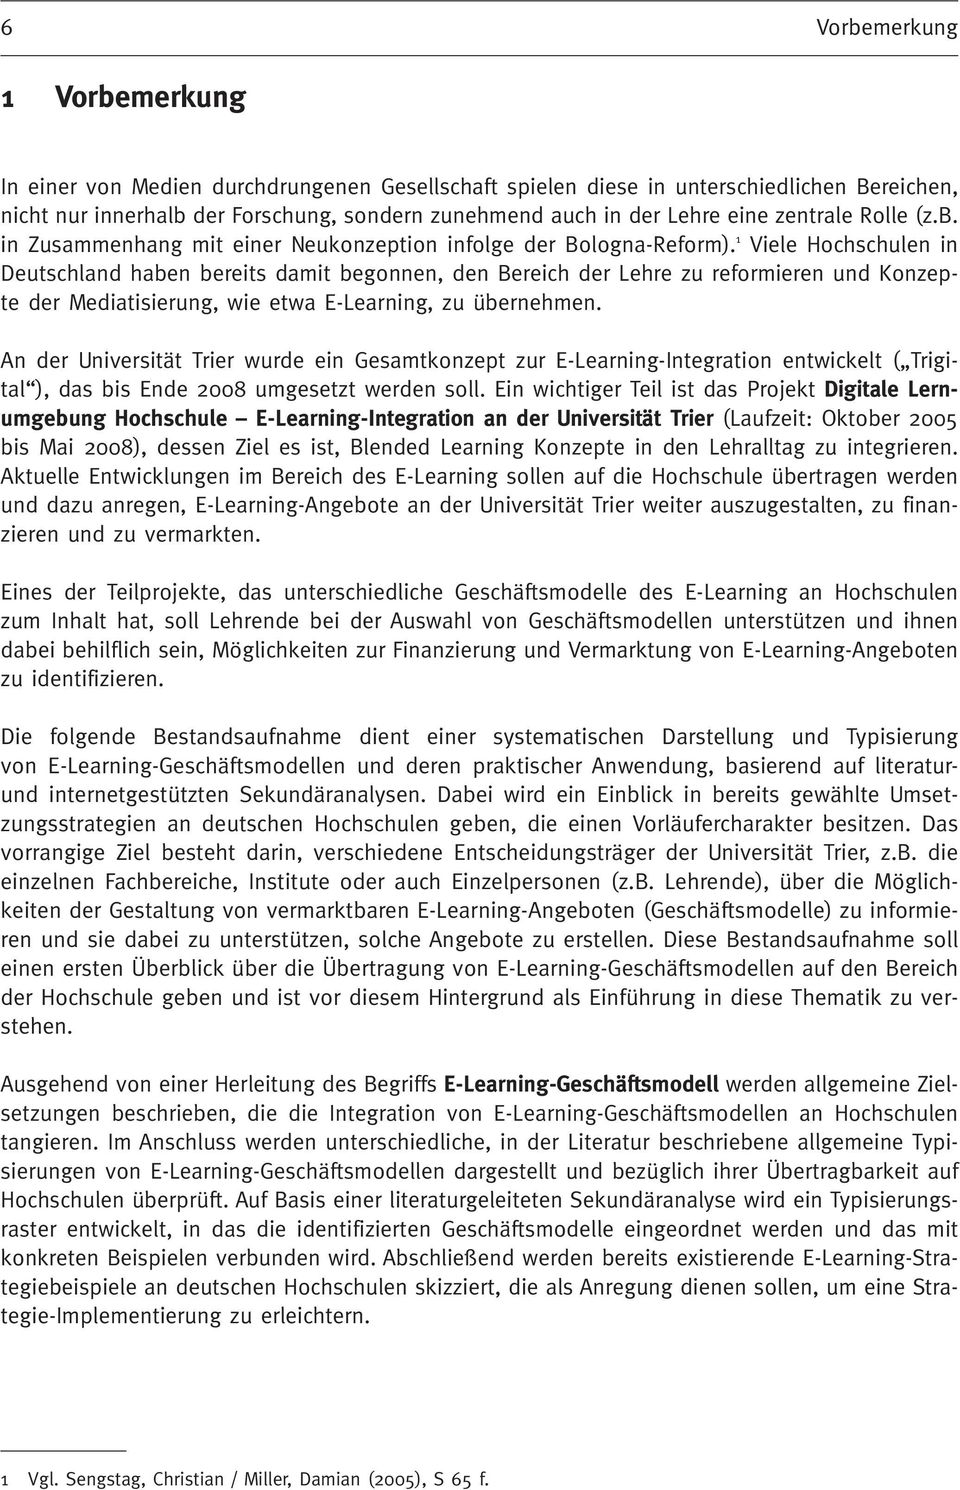 1 Viele Hochschulen in Deutschland haben bereits damit begonnen, den Bereich der Lehre zu reformieren und Konzepte der Mediatisierung, wie etwa E-Learning, zu übernehmen.